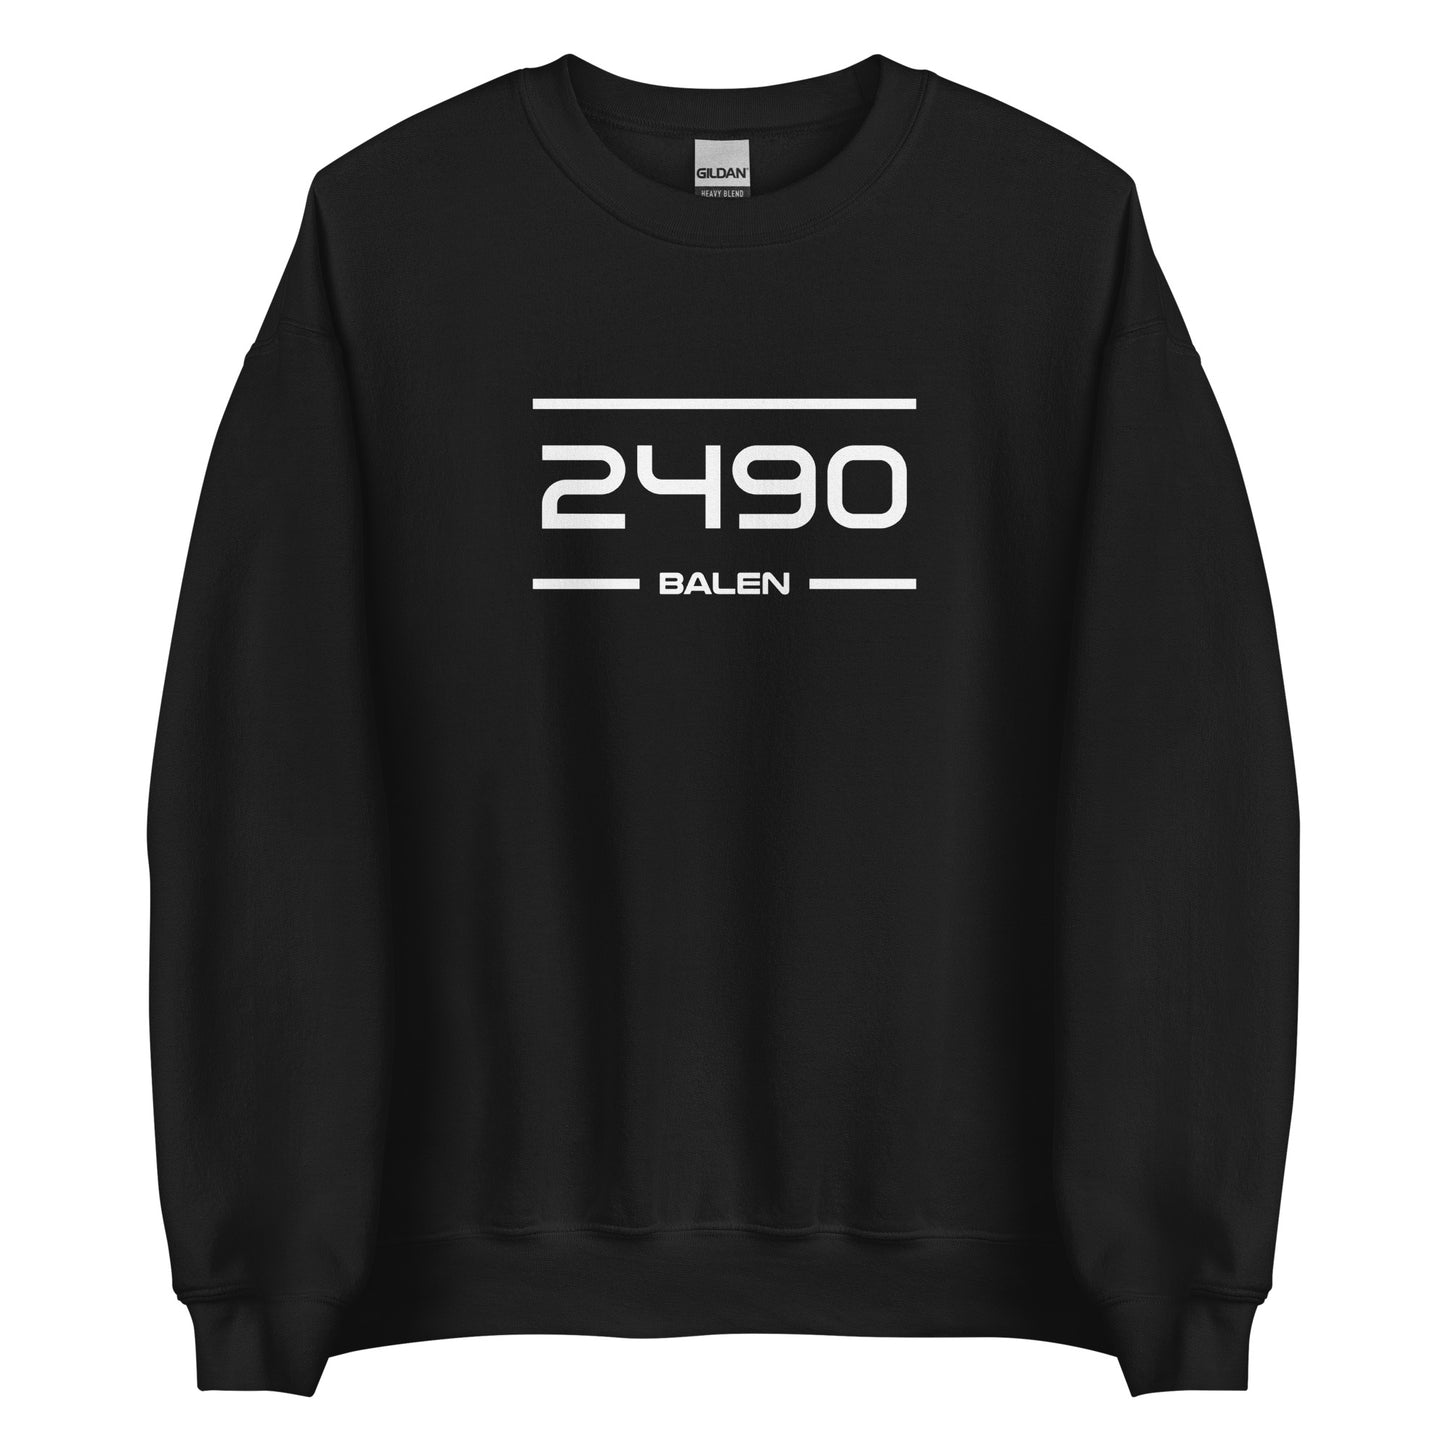 Sweater - 2490 - Balen (M/V)